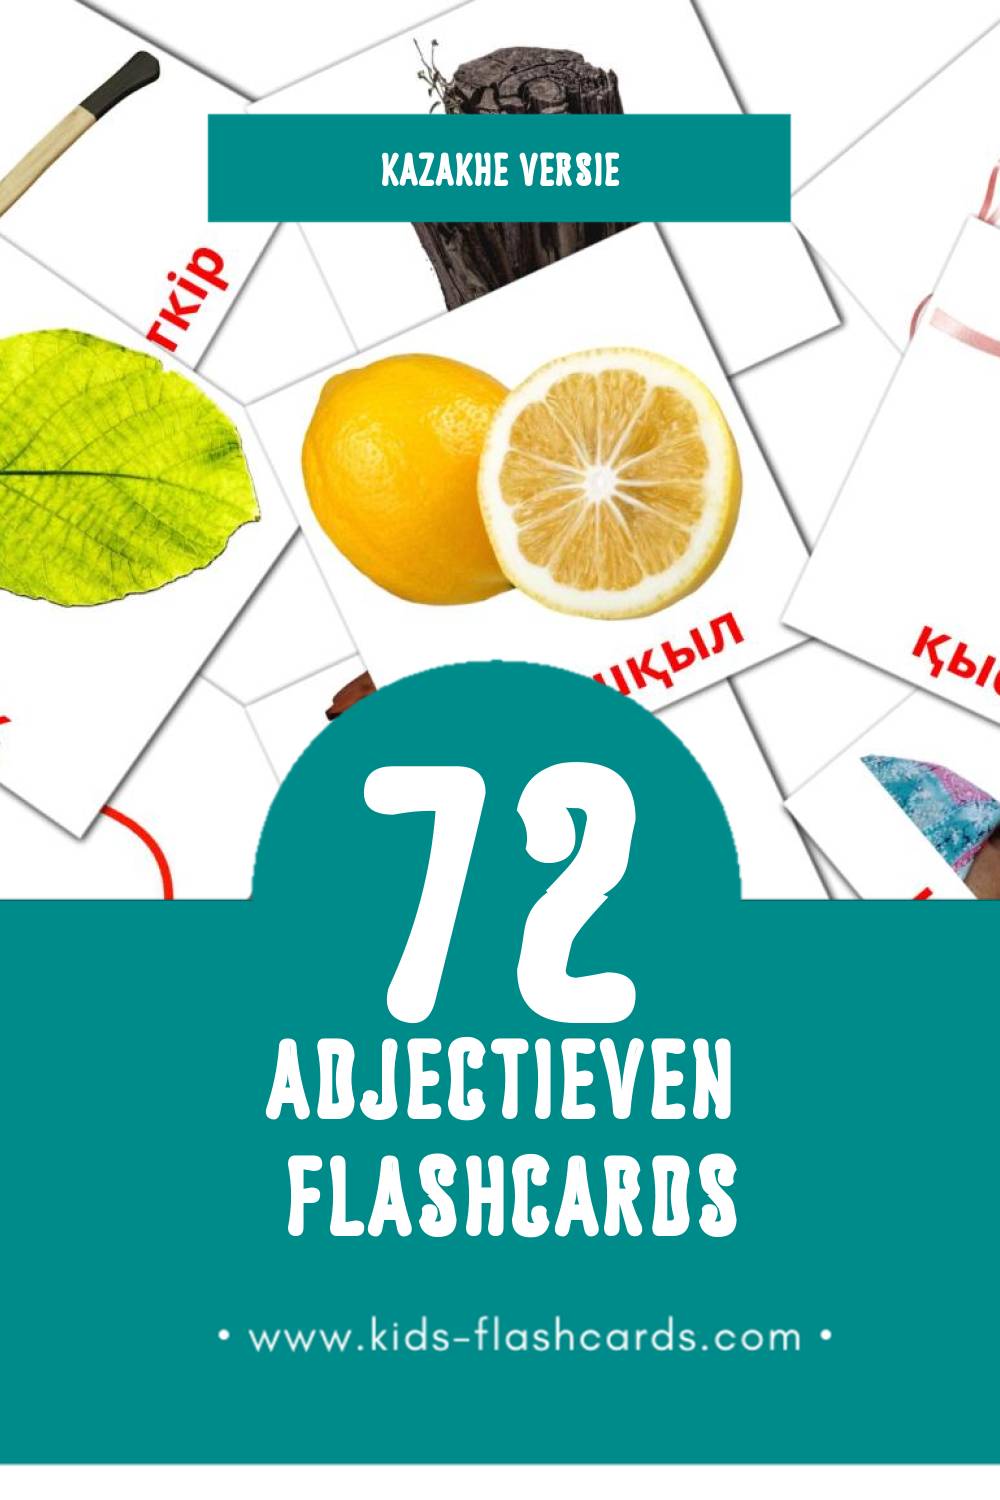 Visuele Сын есімдер Flashcards voor Kleuters (72 kaarten in het Kazakh)